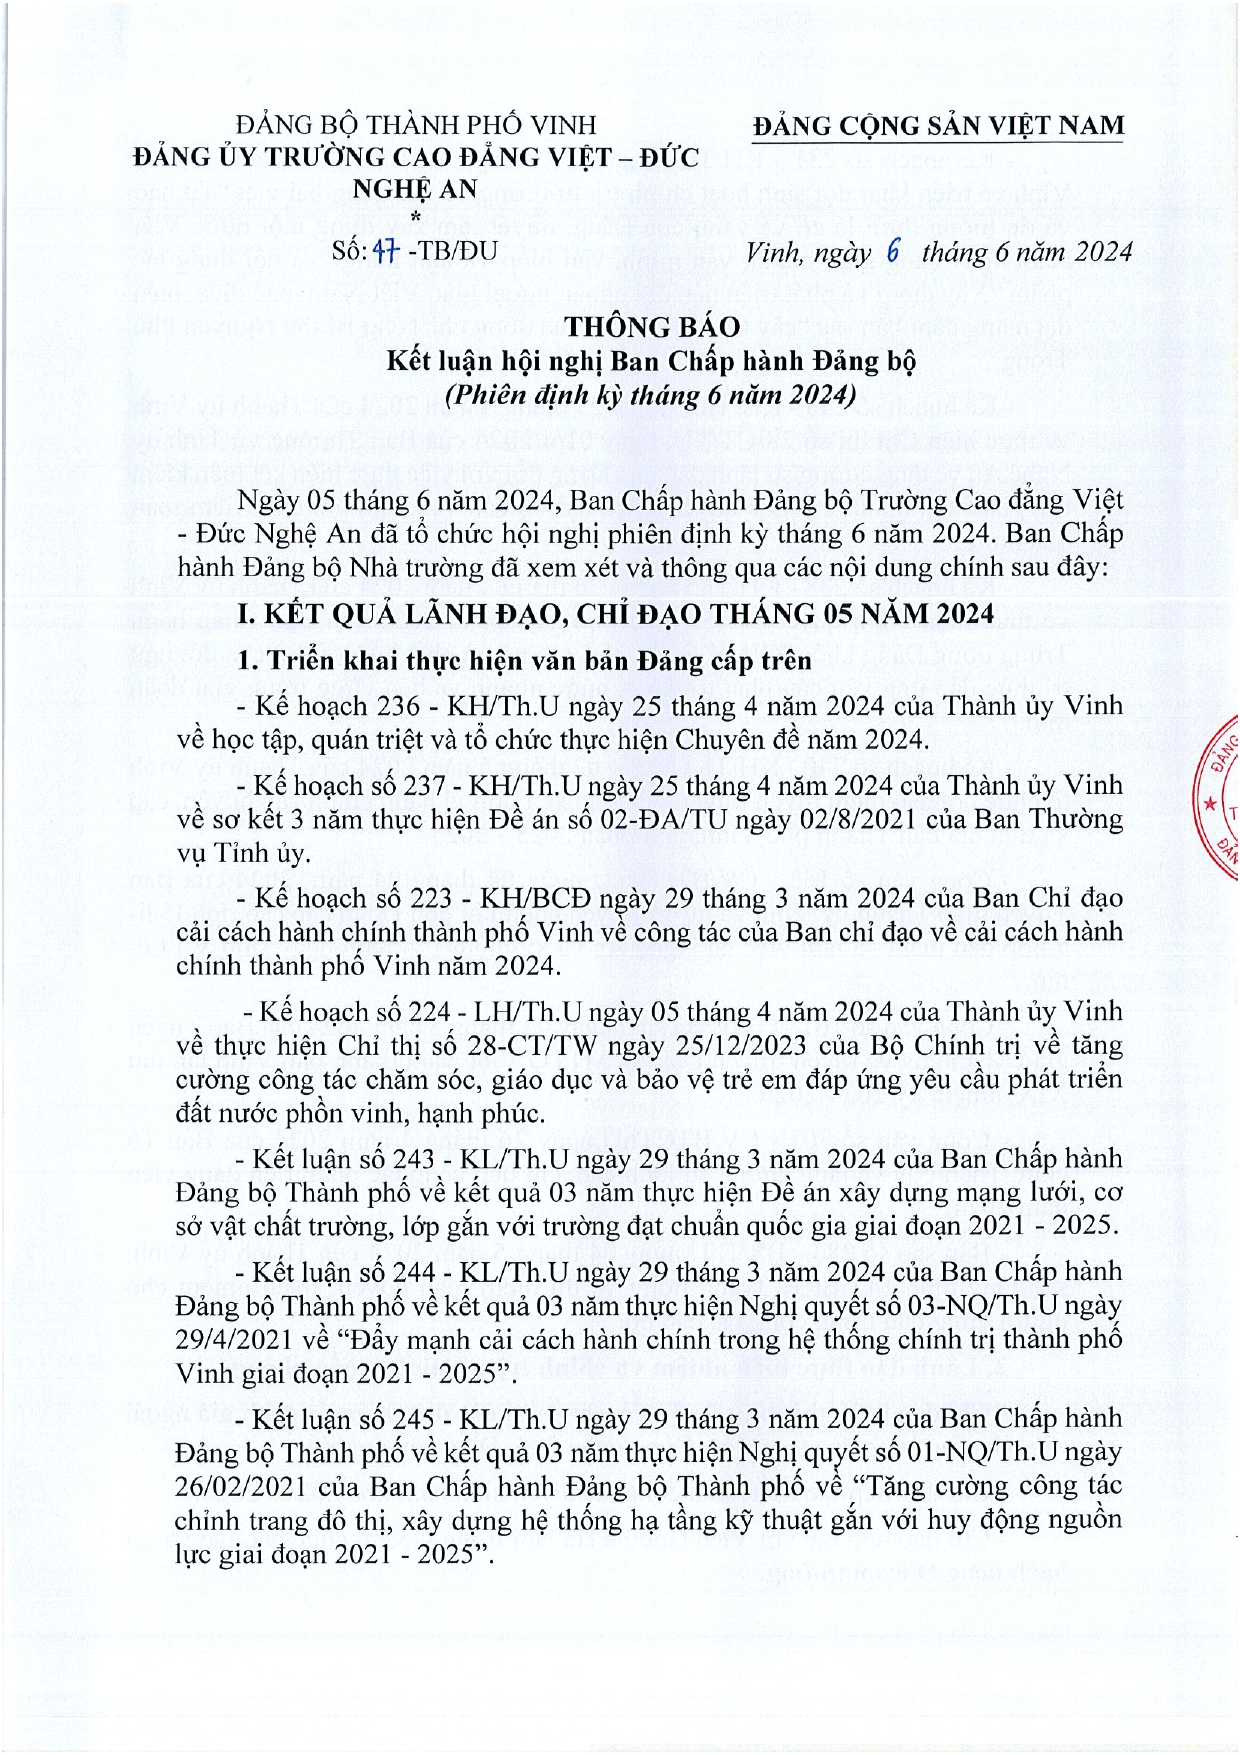 Thông báo số 47-TB/ĐU ngày 6/6/2024 của Đảng ủy Trường Cao đẳng Việt - Đức Nghệ An vv Kết luận Hội nghị Ban Chấp hành Đảng bộ (Phiên định kỳ tháng 6 năm 2024)